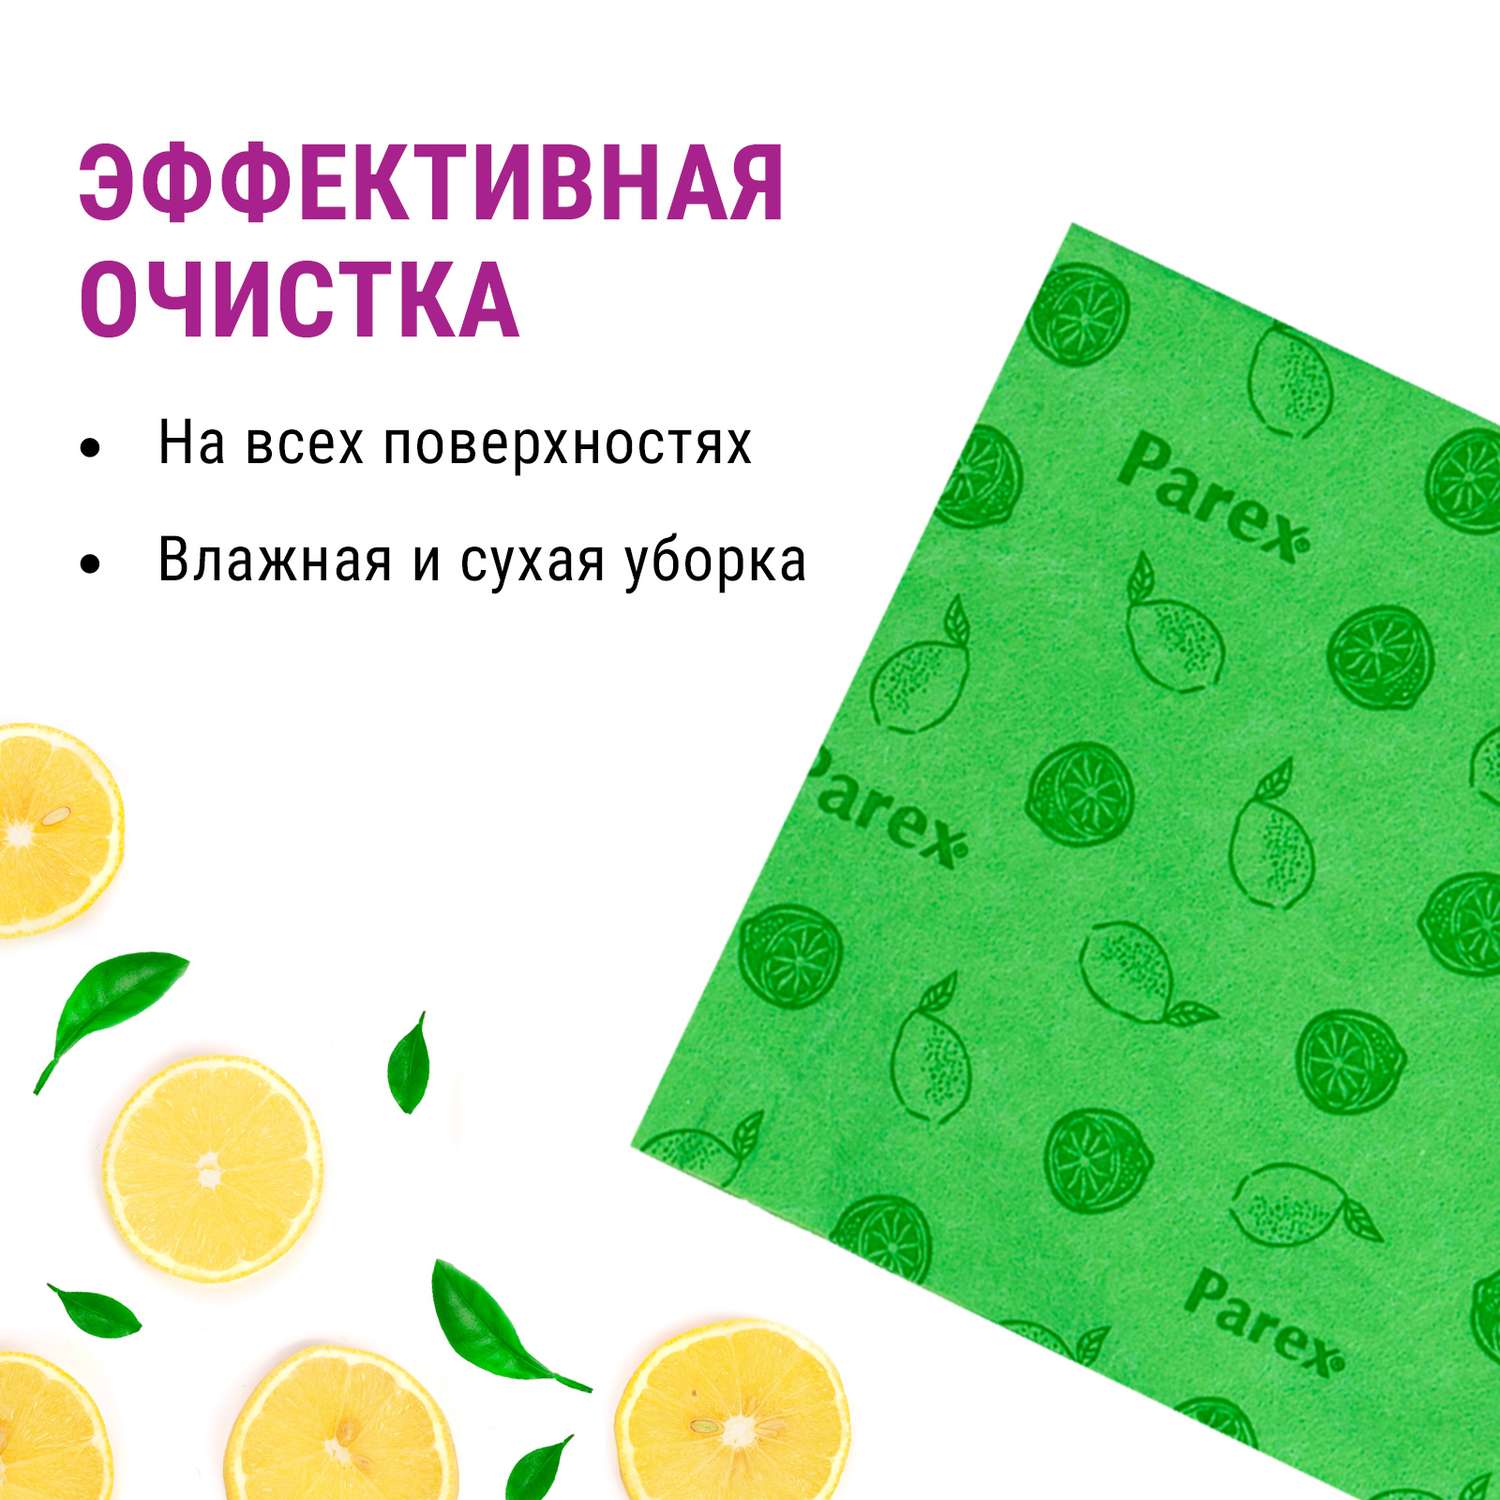 Салфетки впитывающие Parex нетканные с запахом лимона 3 шт - фото 4